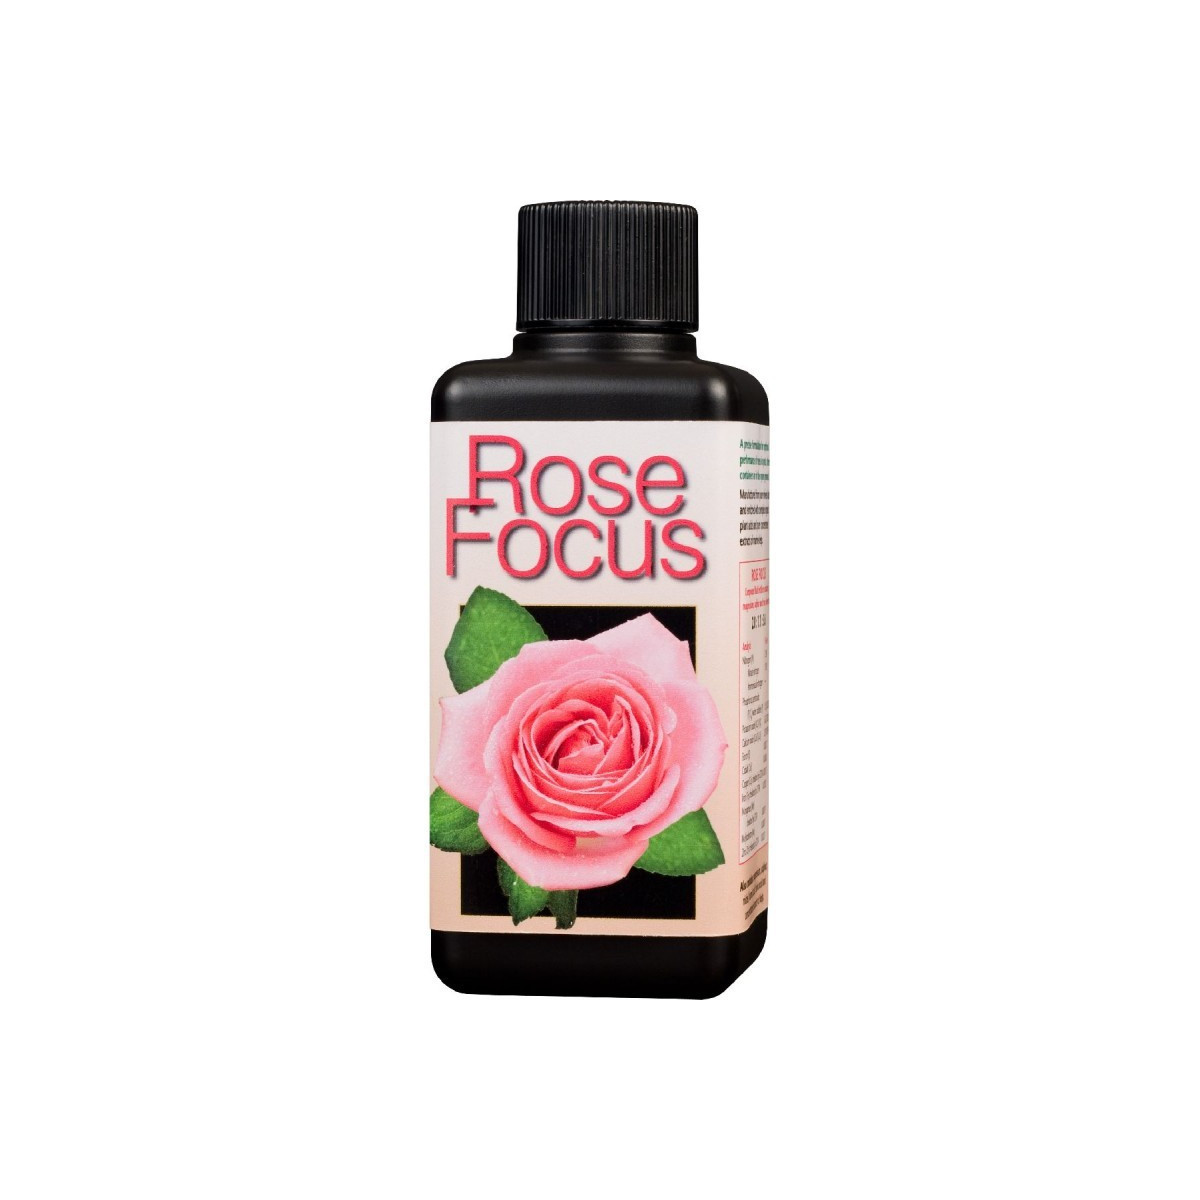 Rose focus hnojivo pro růže - 100 ml